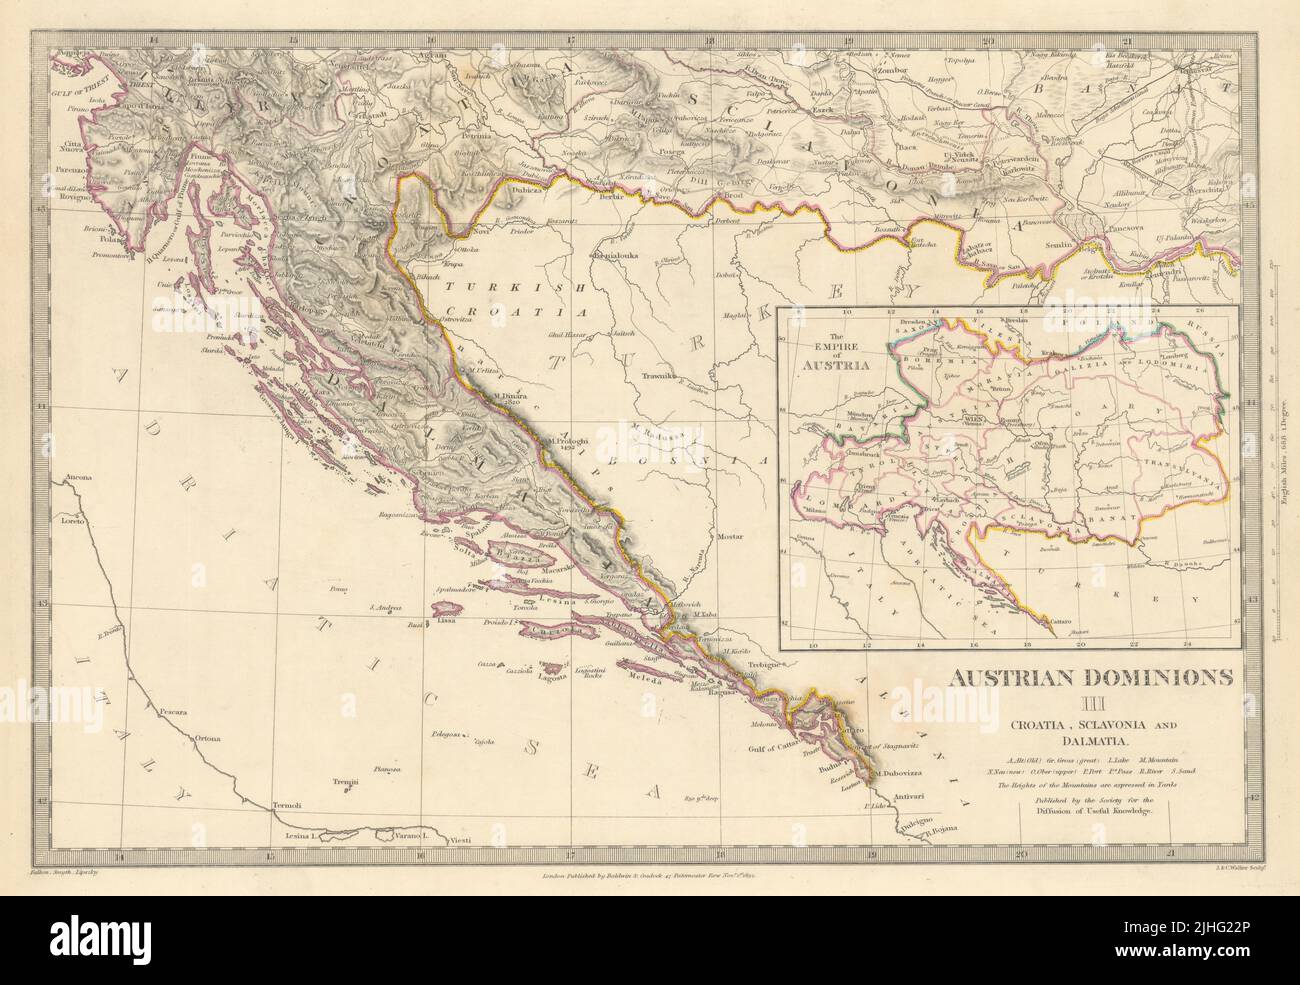 La Croatie. Dalmatie Slavonie Istrie l'Illyrie. Carte d'index empire Autrichien SDUK 1844 Banque D'Images